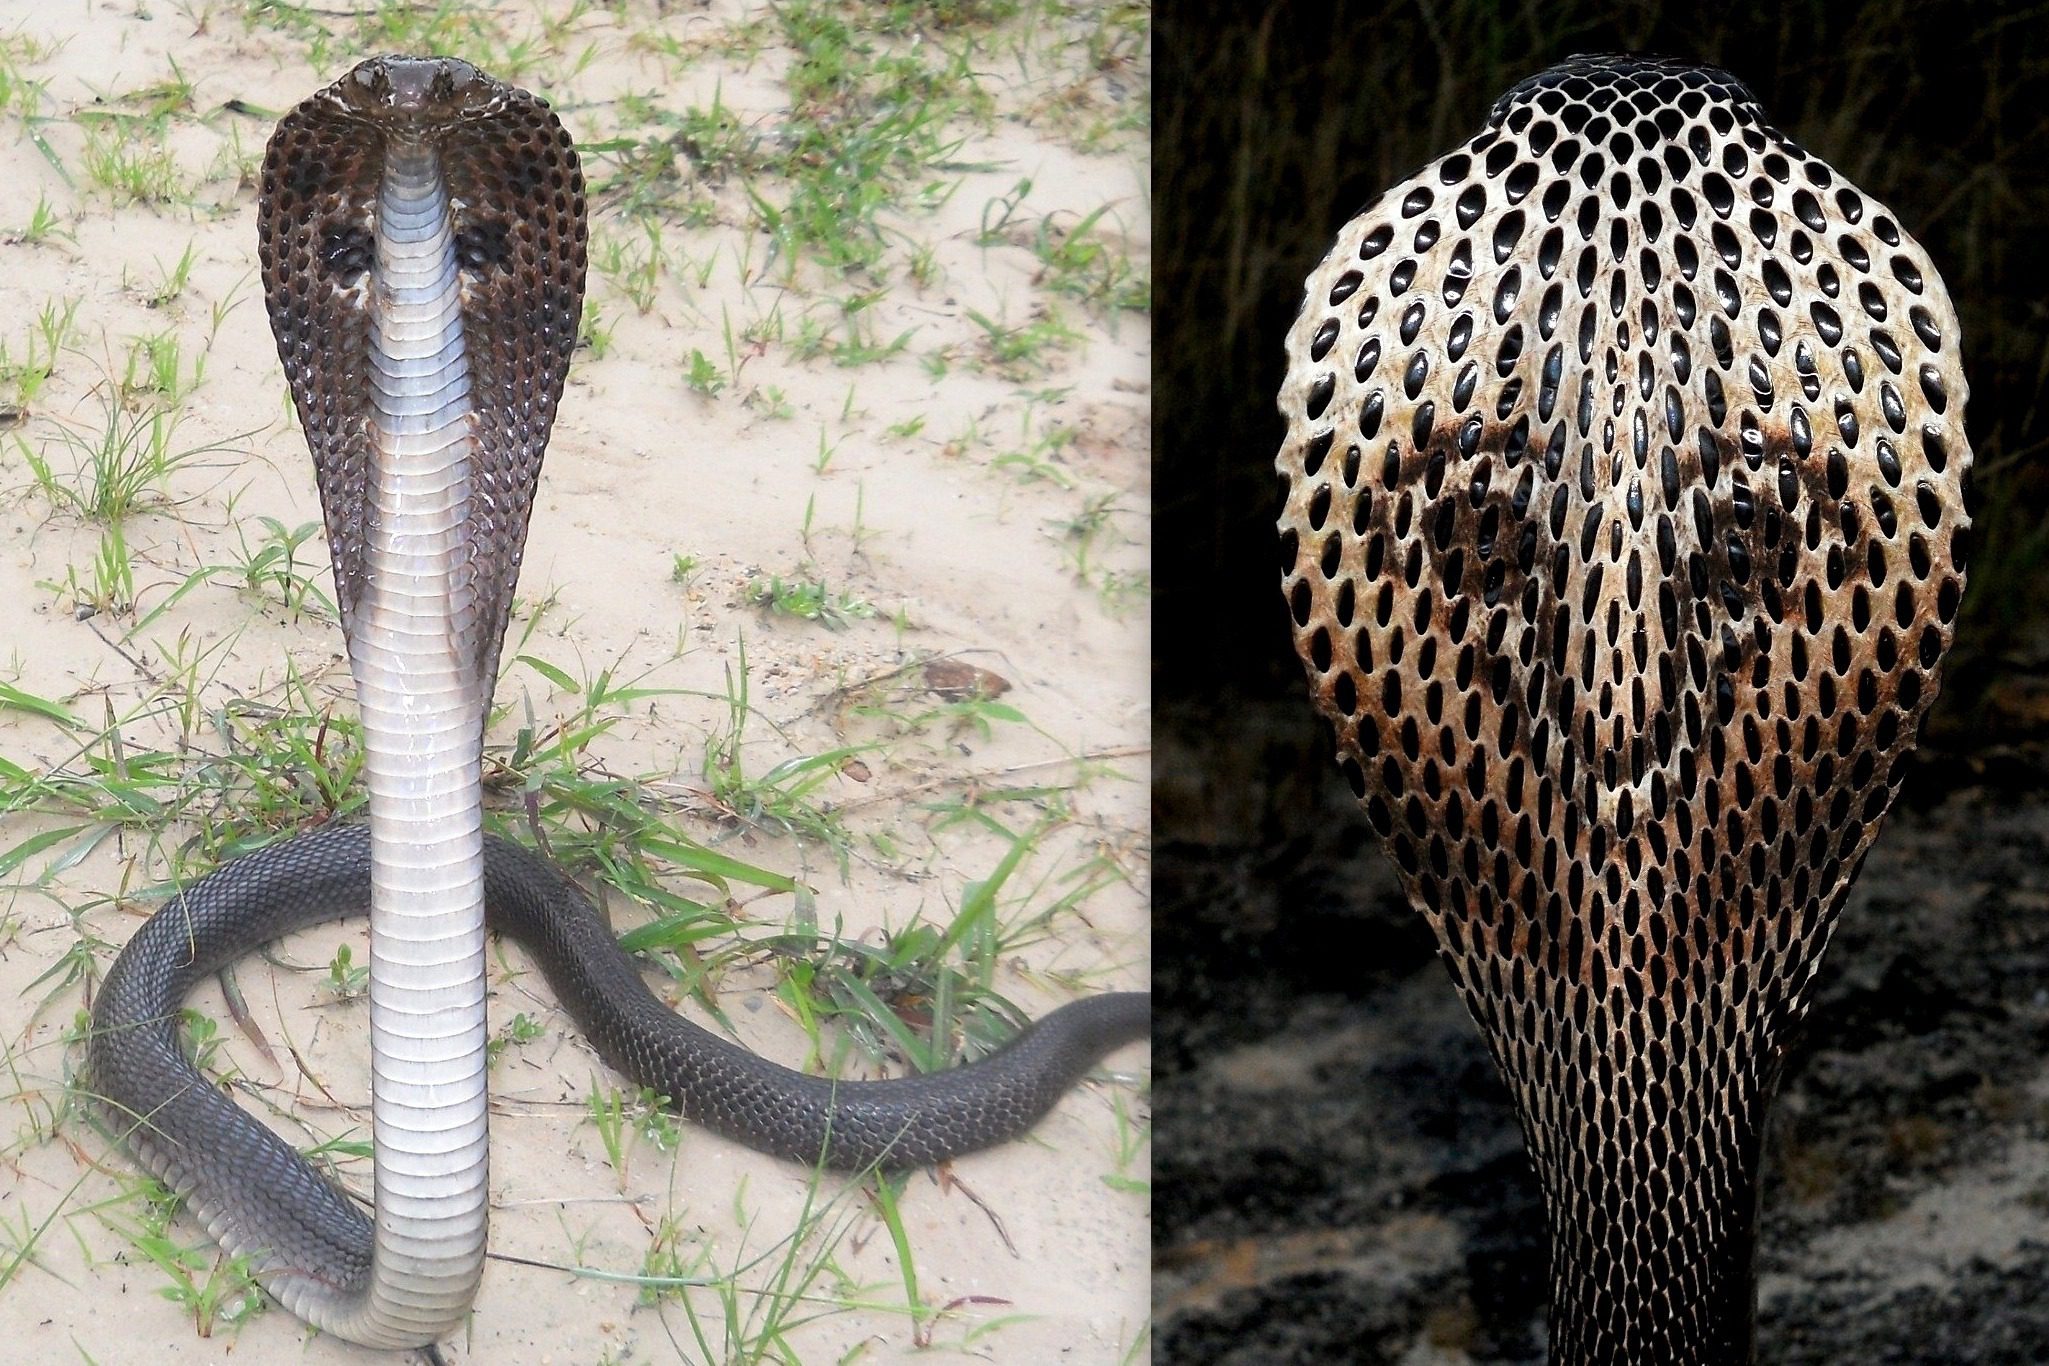 Очковая змея живет в Индии